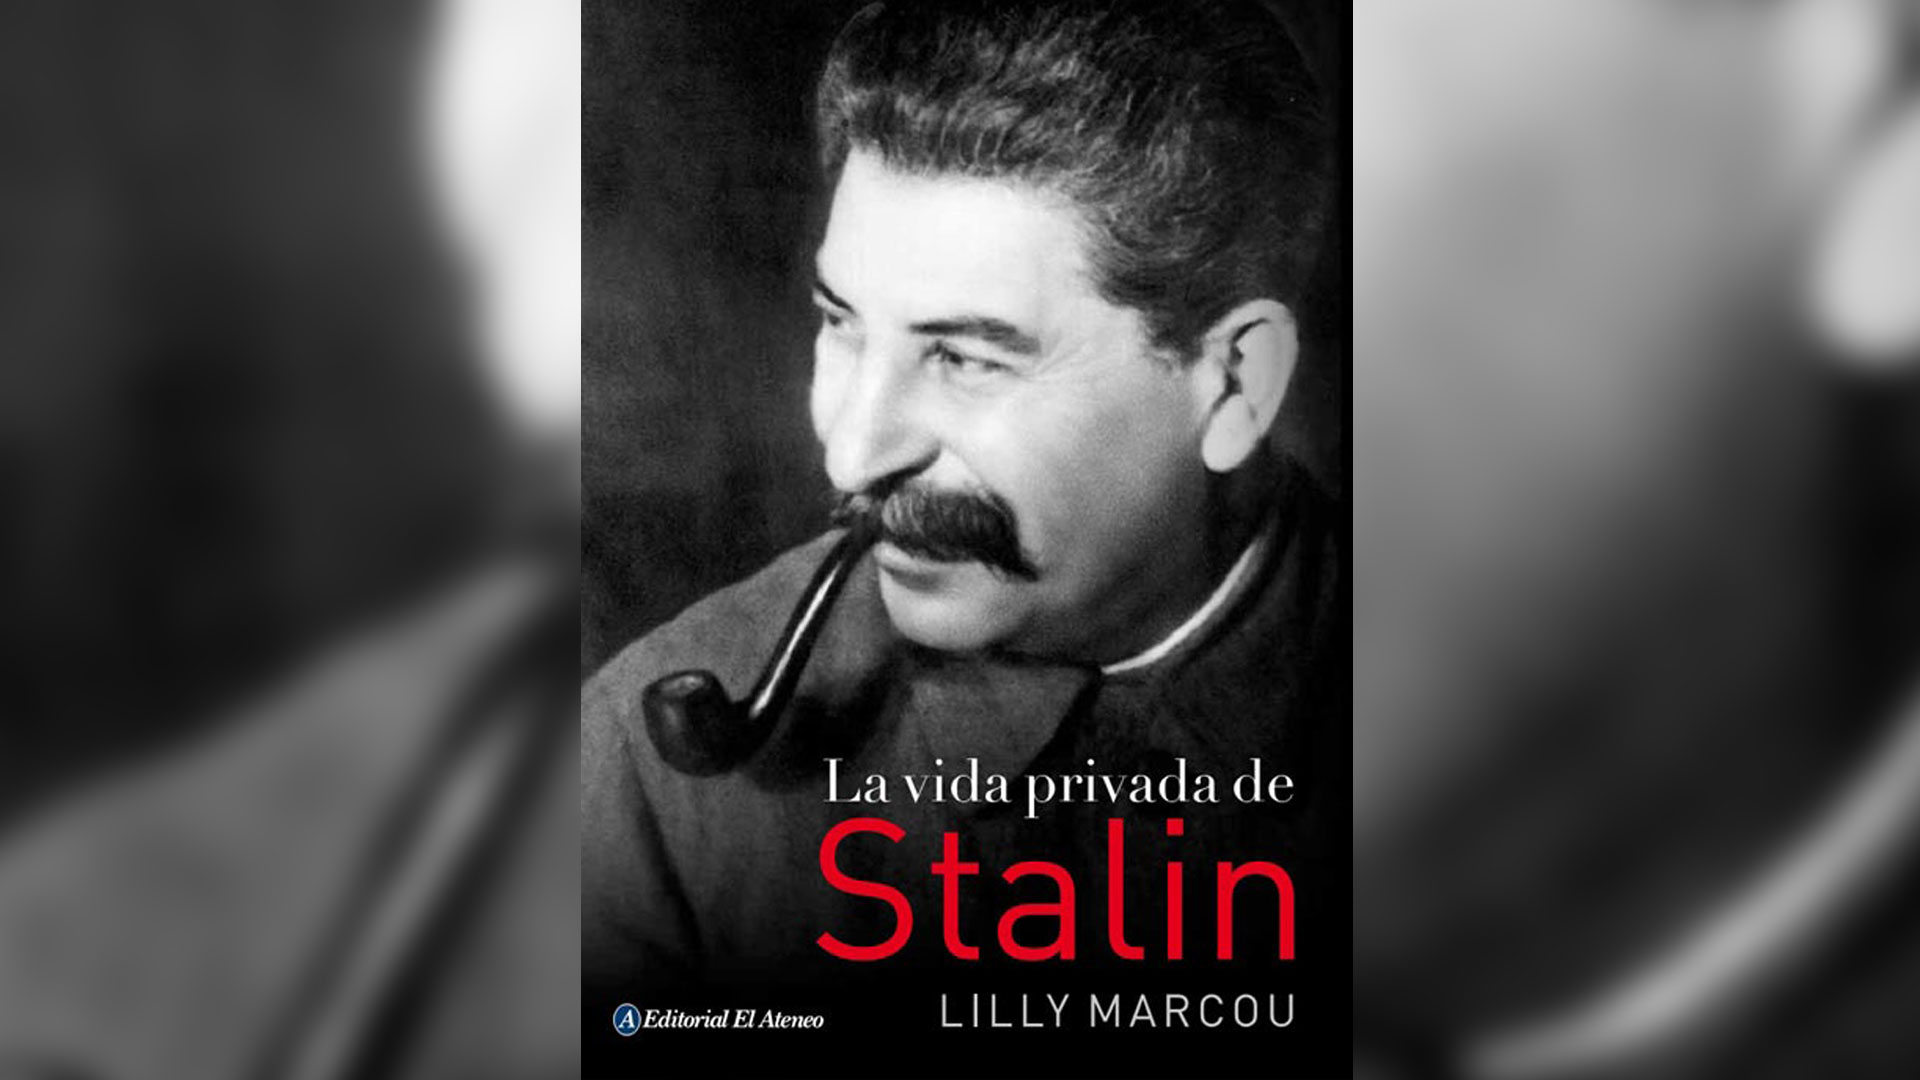 La vida privada de Stalin. Presenta los poemas del que sería un líder sanguinario.